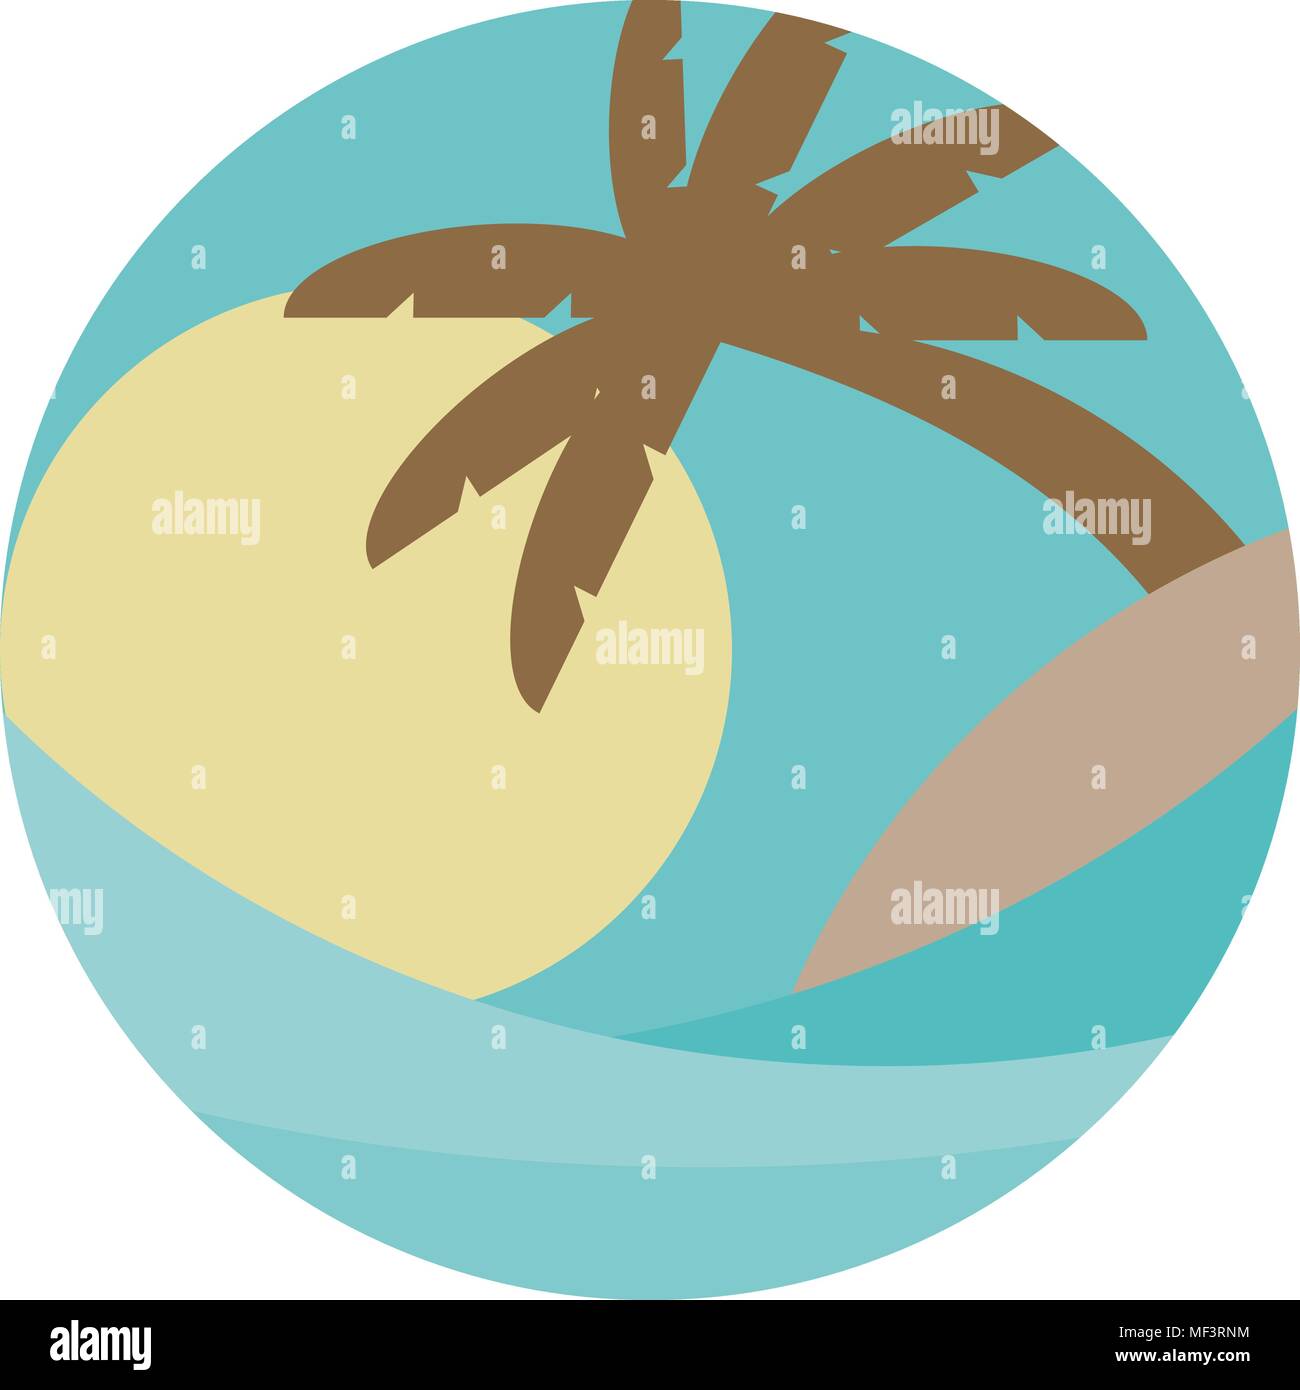 Tema la spiaggia. Illustrazione Vettoriale dell'onda, isola tropicale in mare o oceano, palme e il sun. Viaggio concetti resort Illustrazione Vettoriale